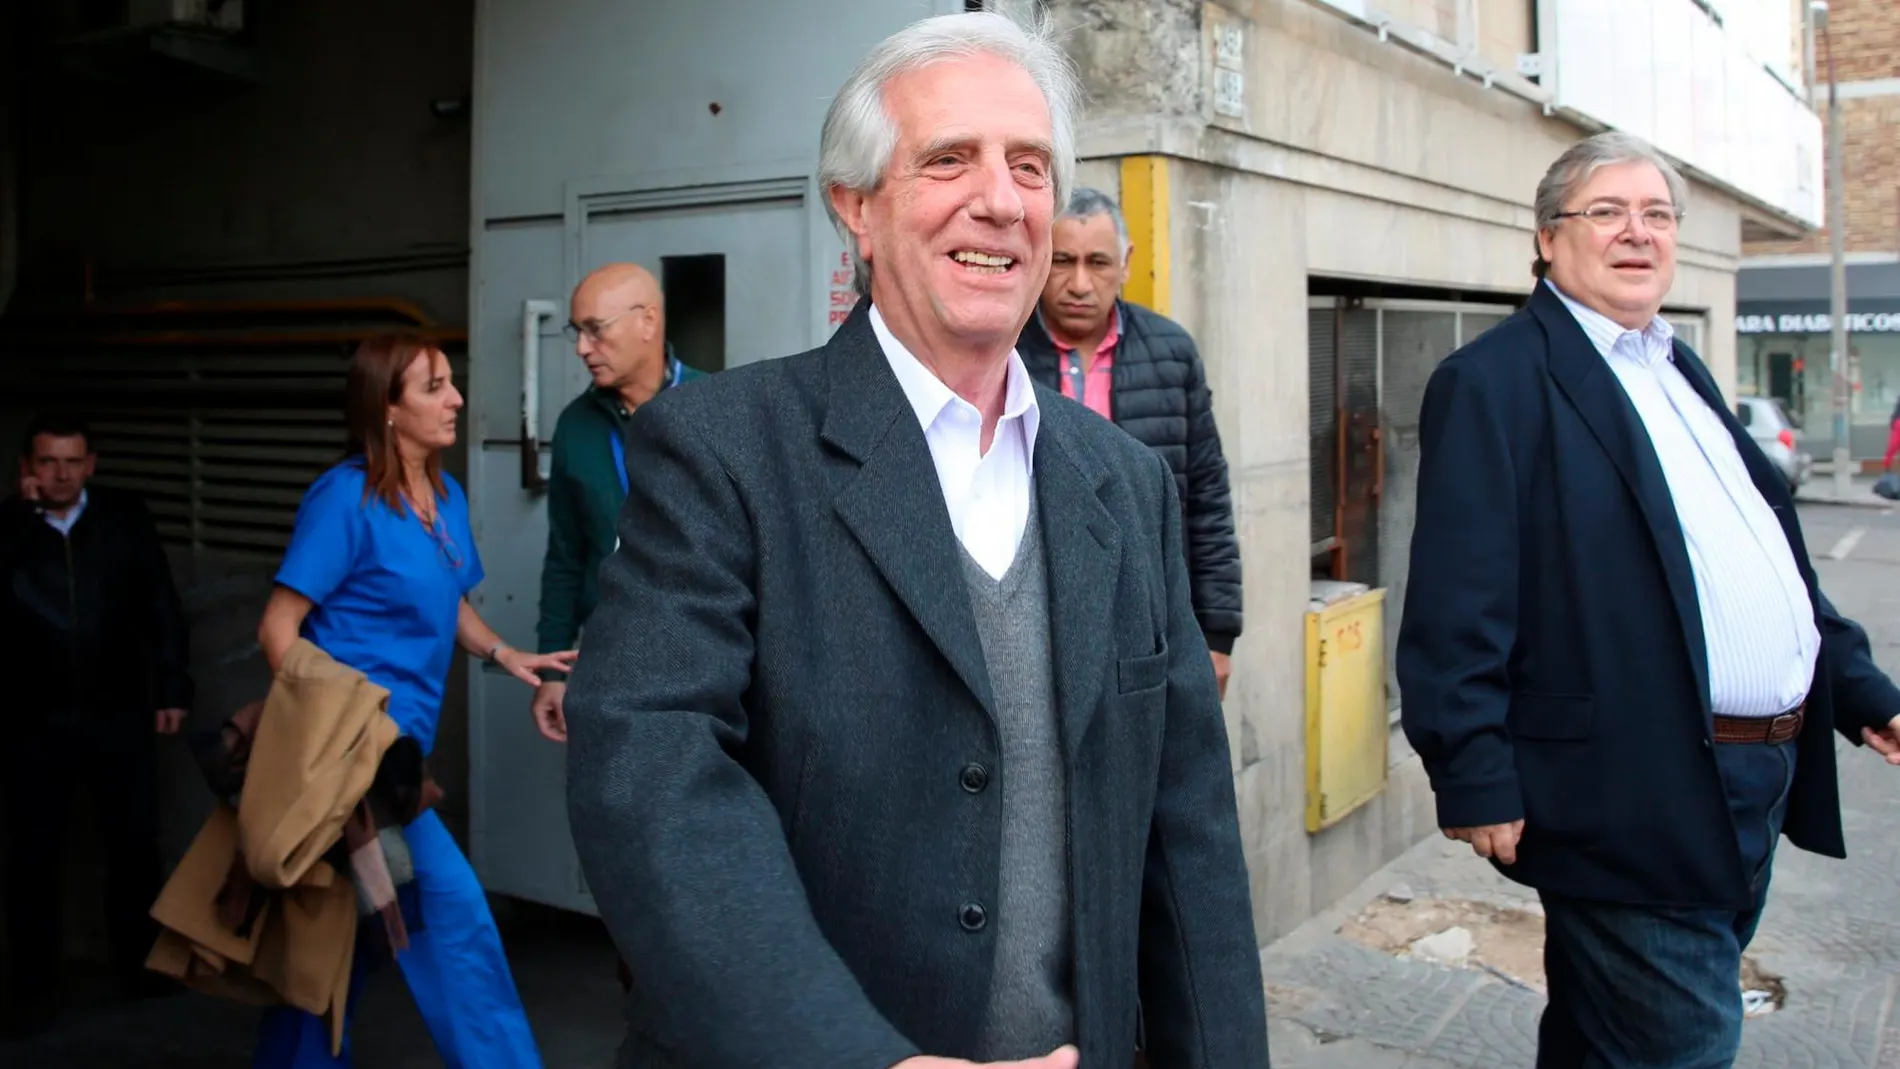 El presidente de Uruguay, Tabaré Vázquez, abandona la Asociación Española, centro sanitario donde fue sometido a una biopsia en la que se determinó que tiene un tumor maligno en el pulmón/Efe